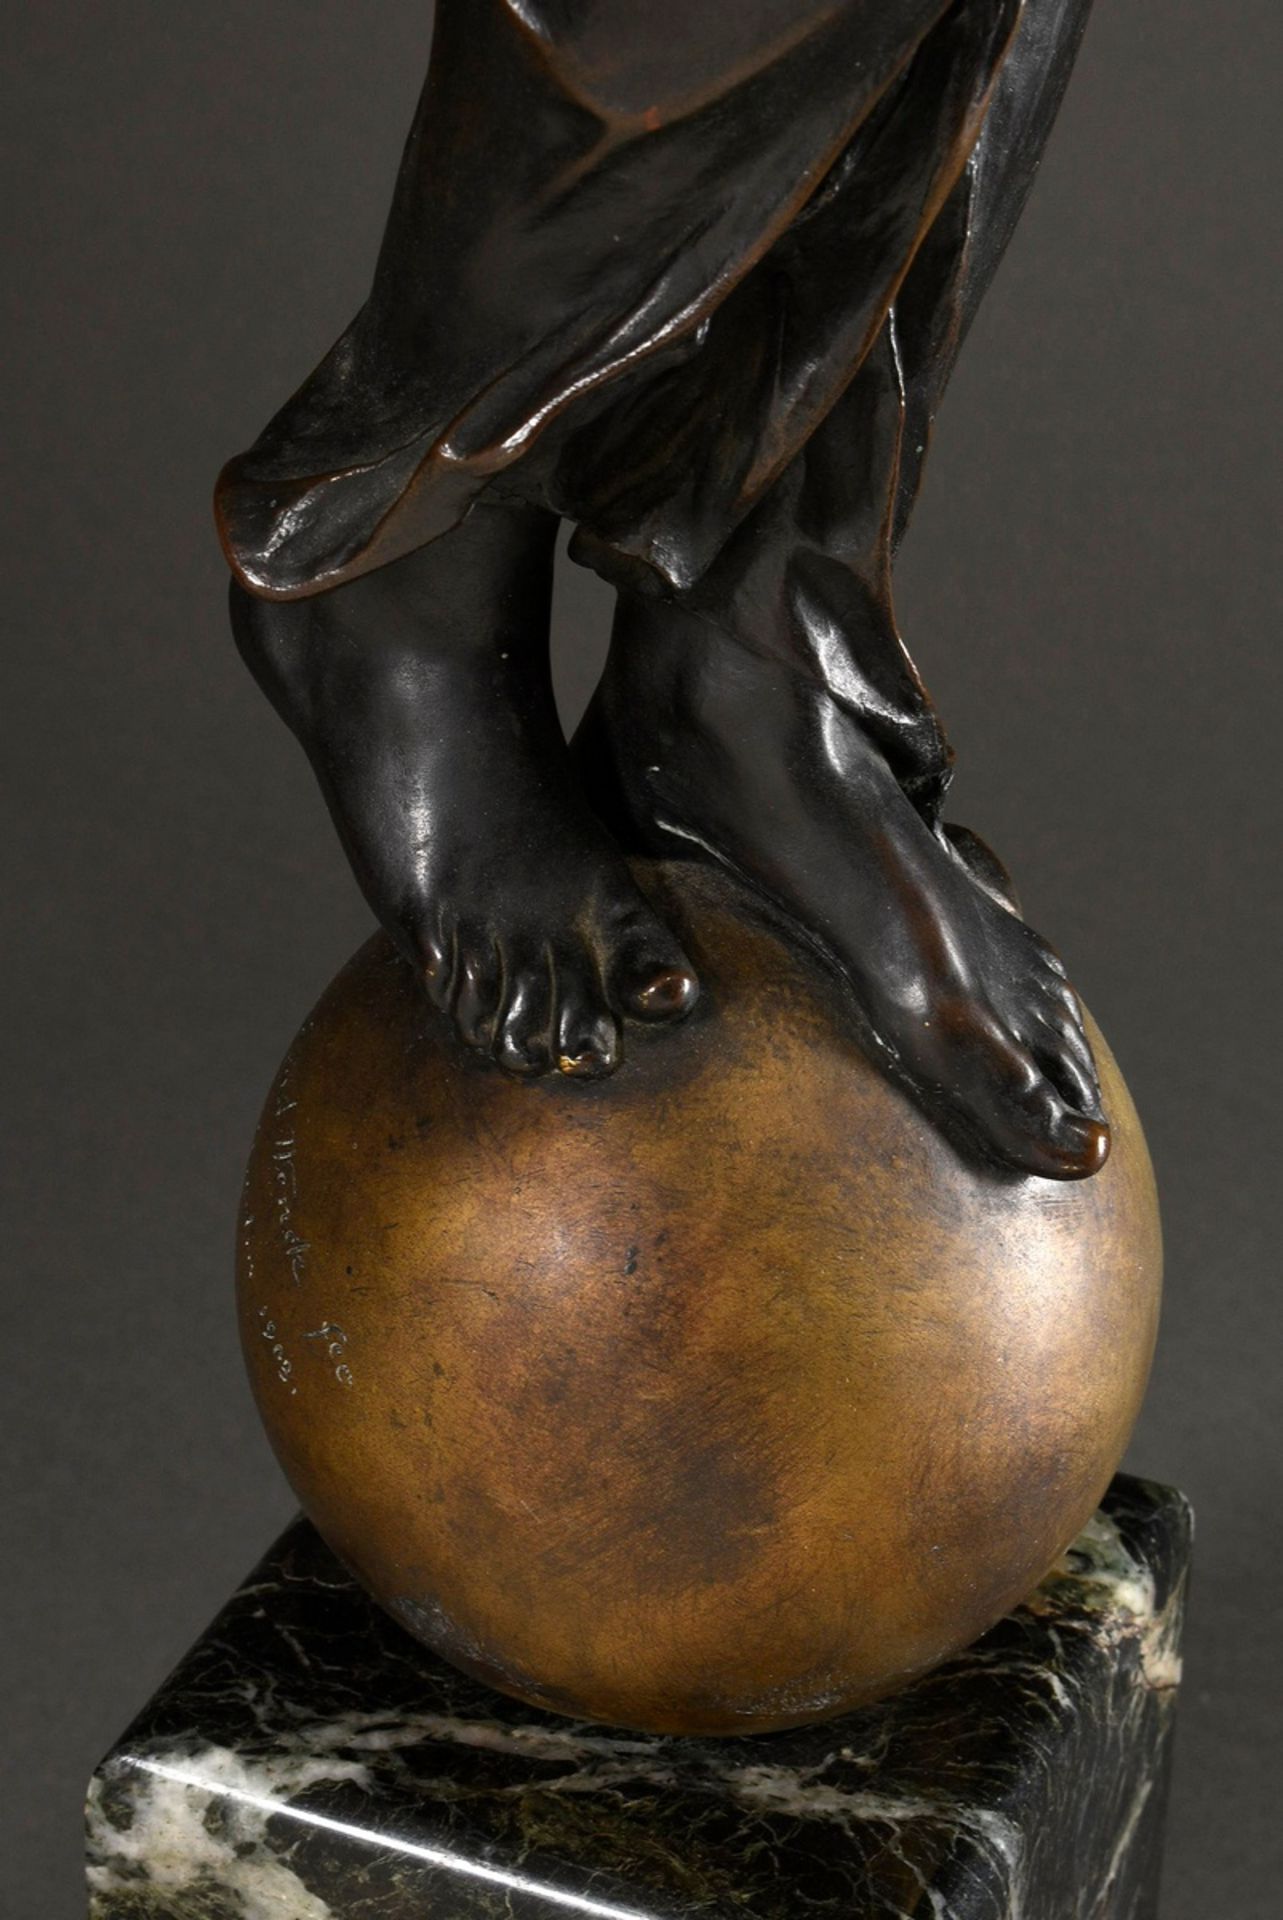 Wenck, Ernst (1865-1929) "Irene" 1903, vergoldete und dunkel patinierte Bronze auf grünem Marmor So - Bild 5 aus 18